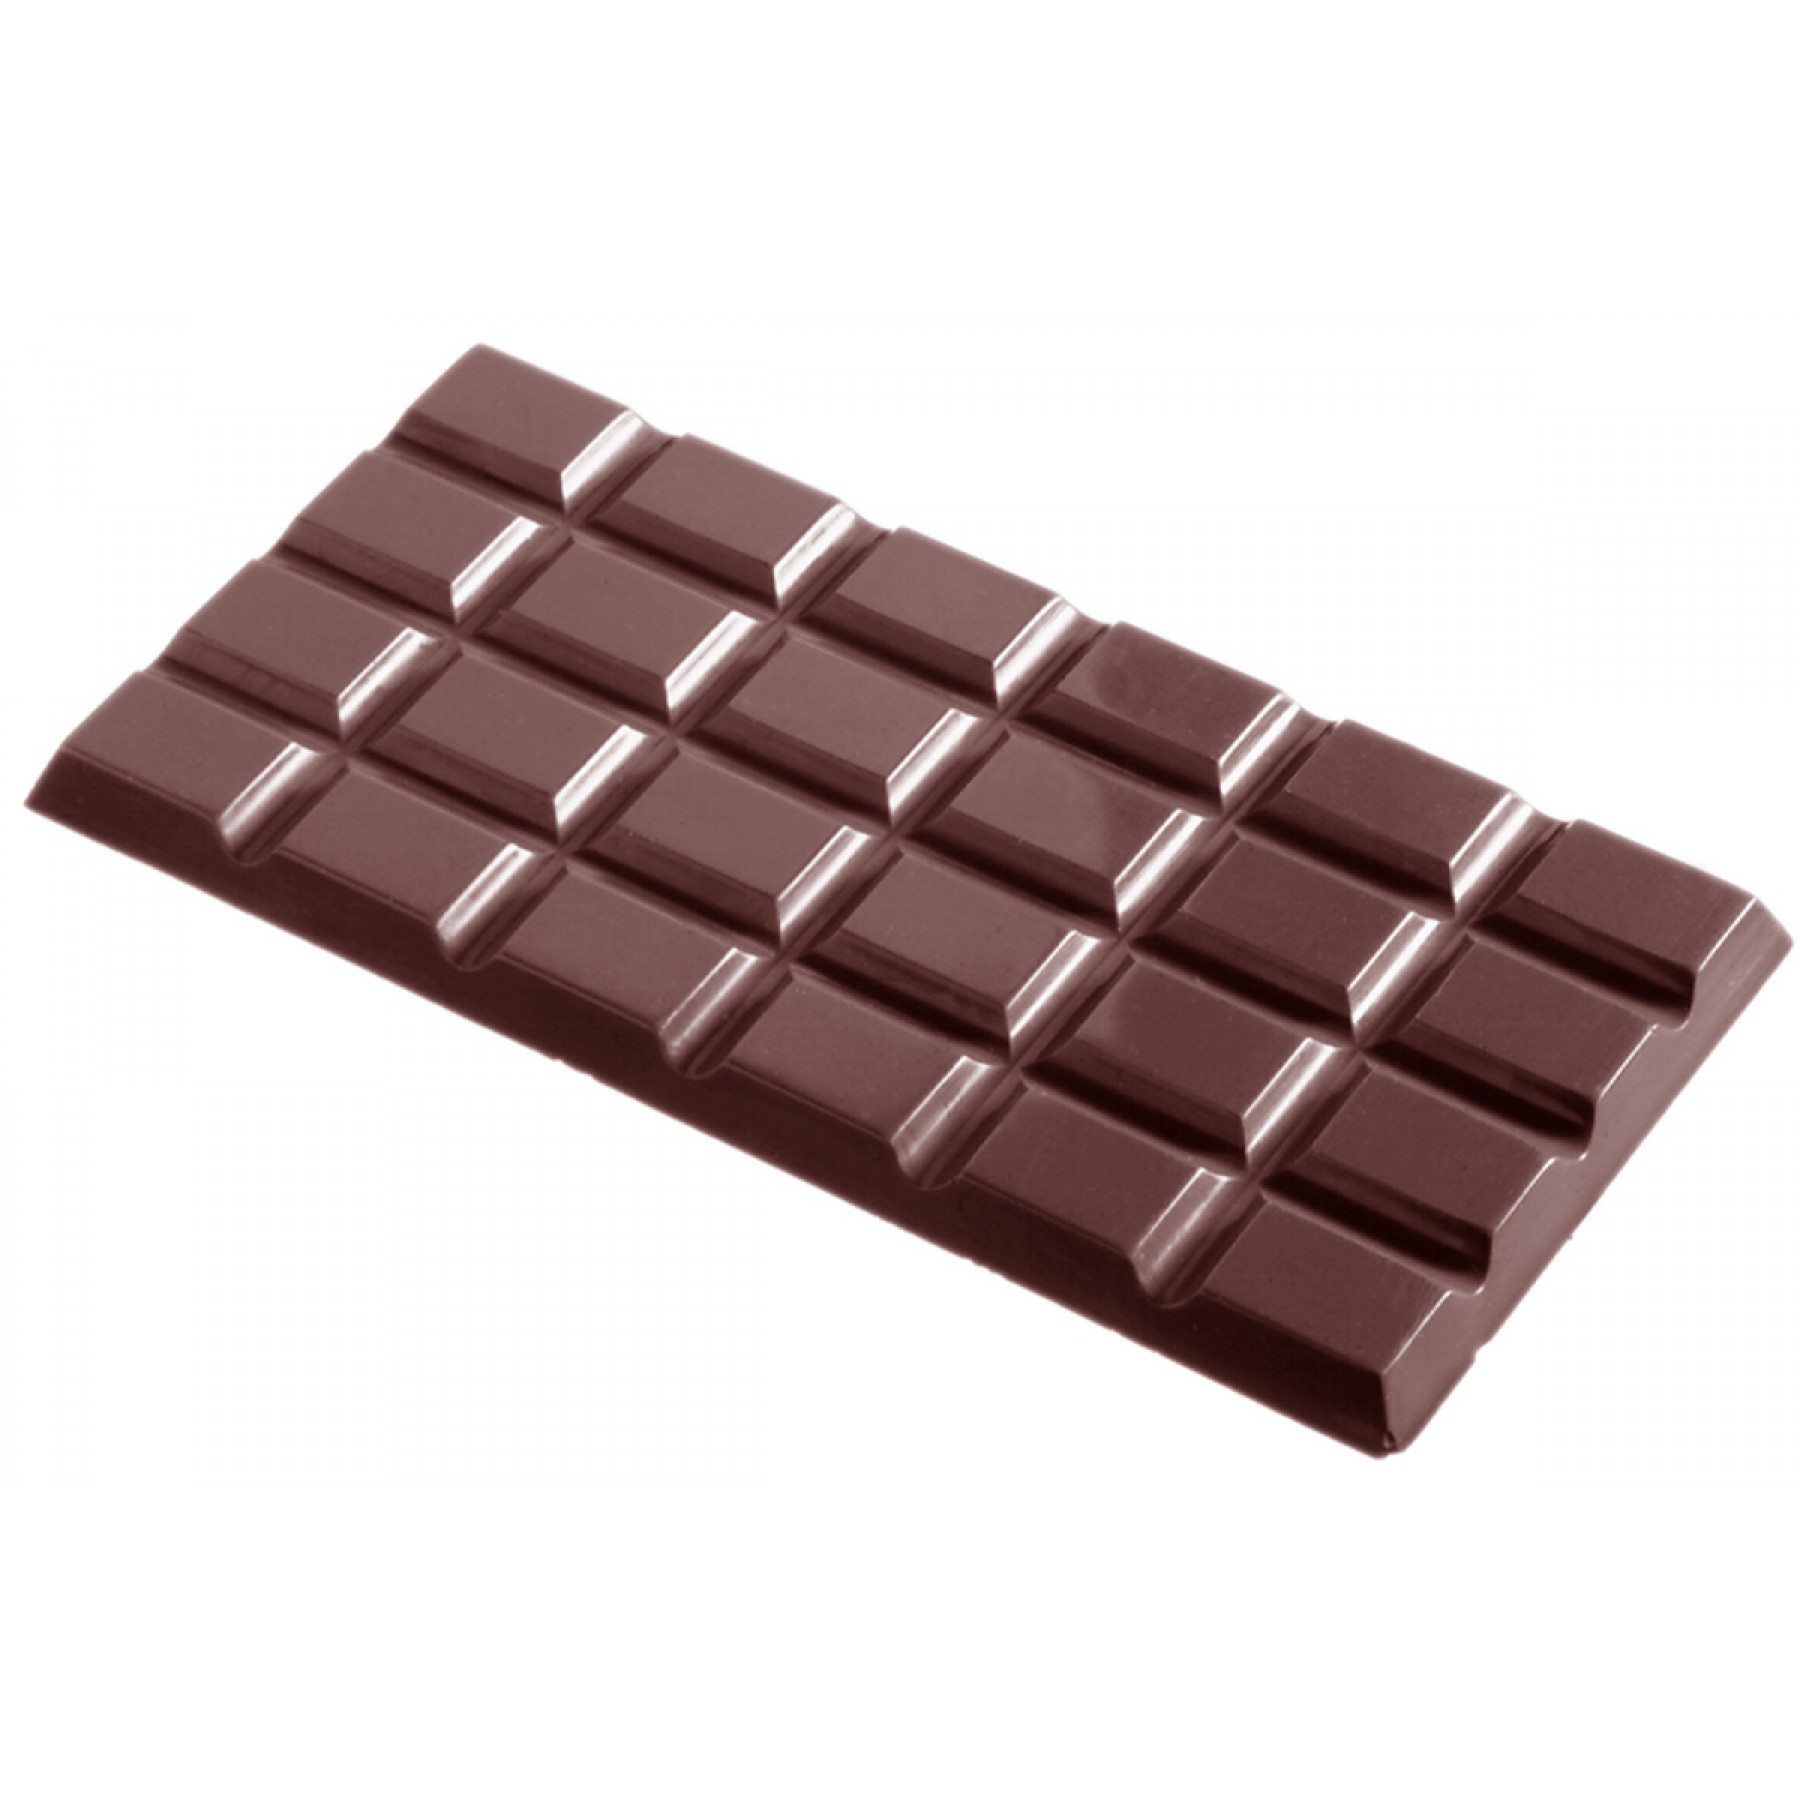 Шоколадные формы купить. Поликарбонатные формы для шоколада Chocolate World. Шоколад ворлд поликарбонатная форма. Форма поликарбонатная Chocolate World - плитка 1992cw. Формы для конфет поликарбонат Chocolate World.